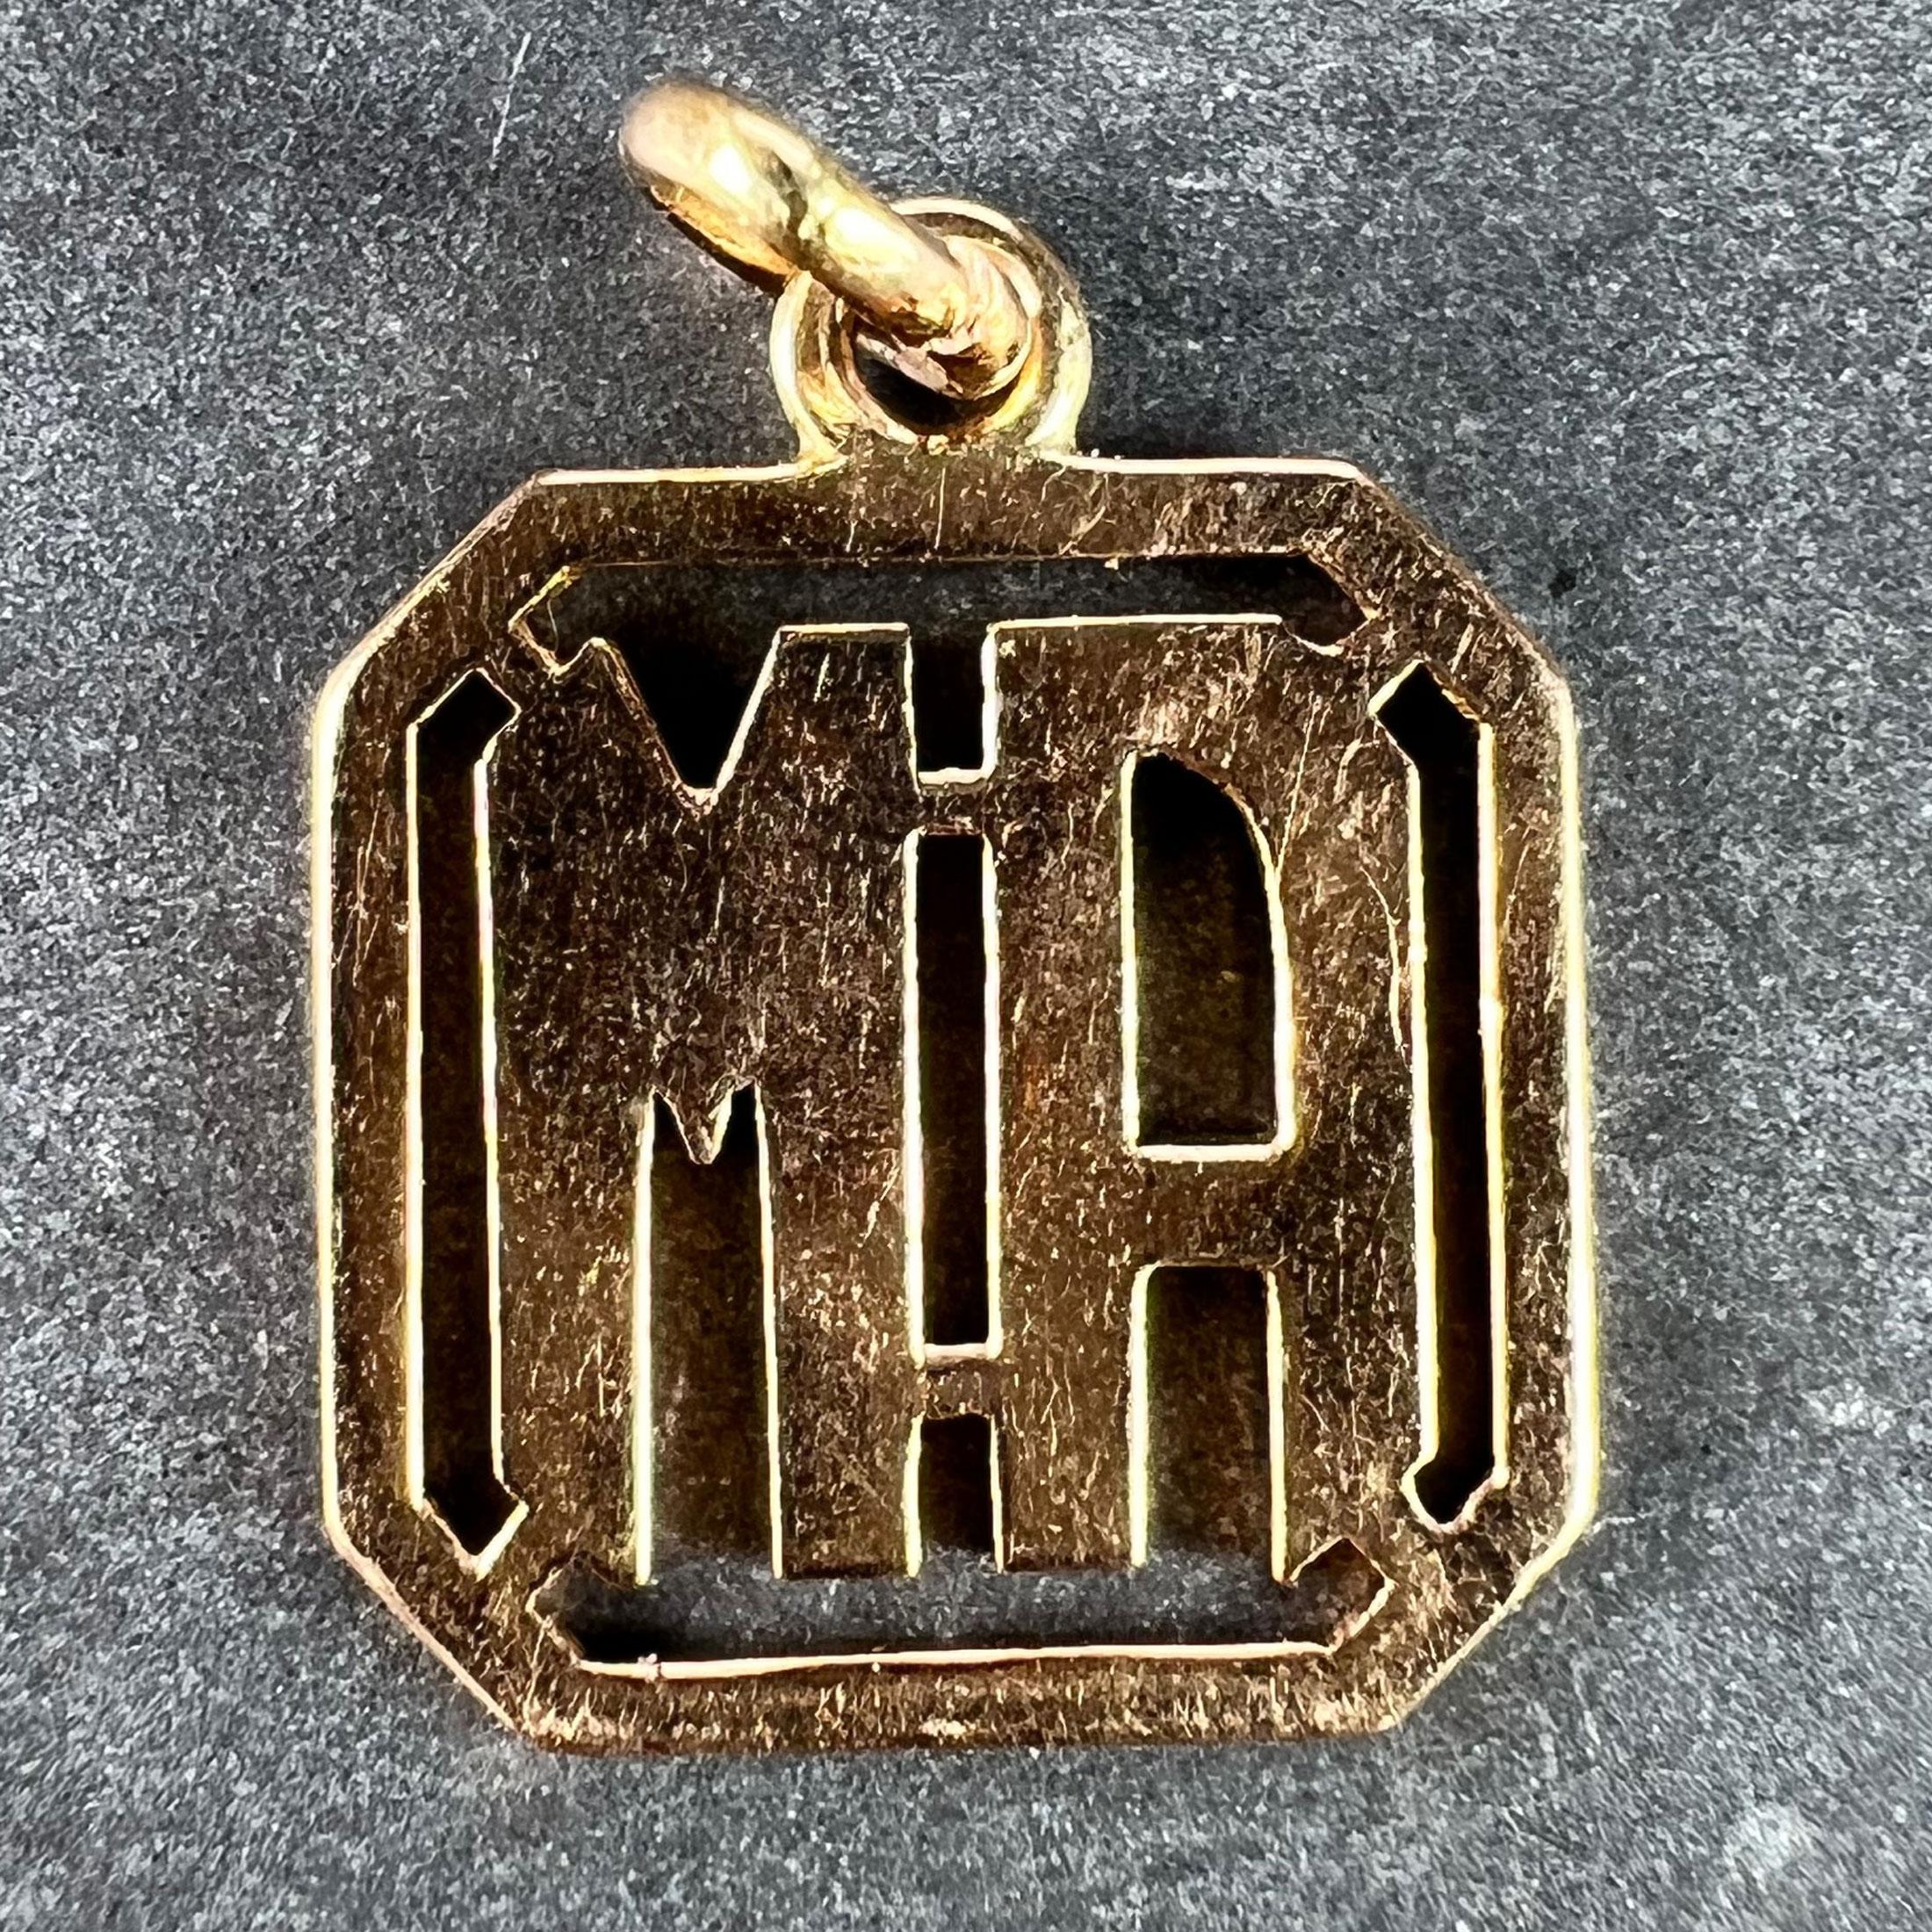 Pendentif à breloques en or jaune 18 carats (18K) conçu comme un monogramme carré percé des initiales MA ou AM. Non marqué mais testé pour l'or 18 carats.

Dimensions : 1,7 x 1,4 x 0,1 cm (sans l'anneau de saut) : 1,7 x 1,4 x 0,1 cm (sans anneau de